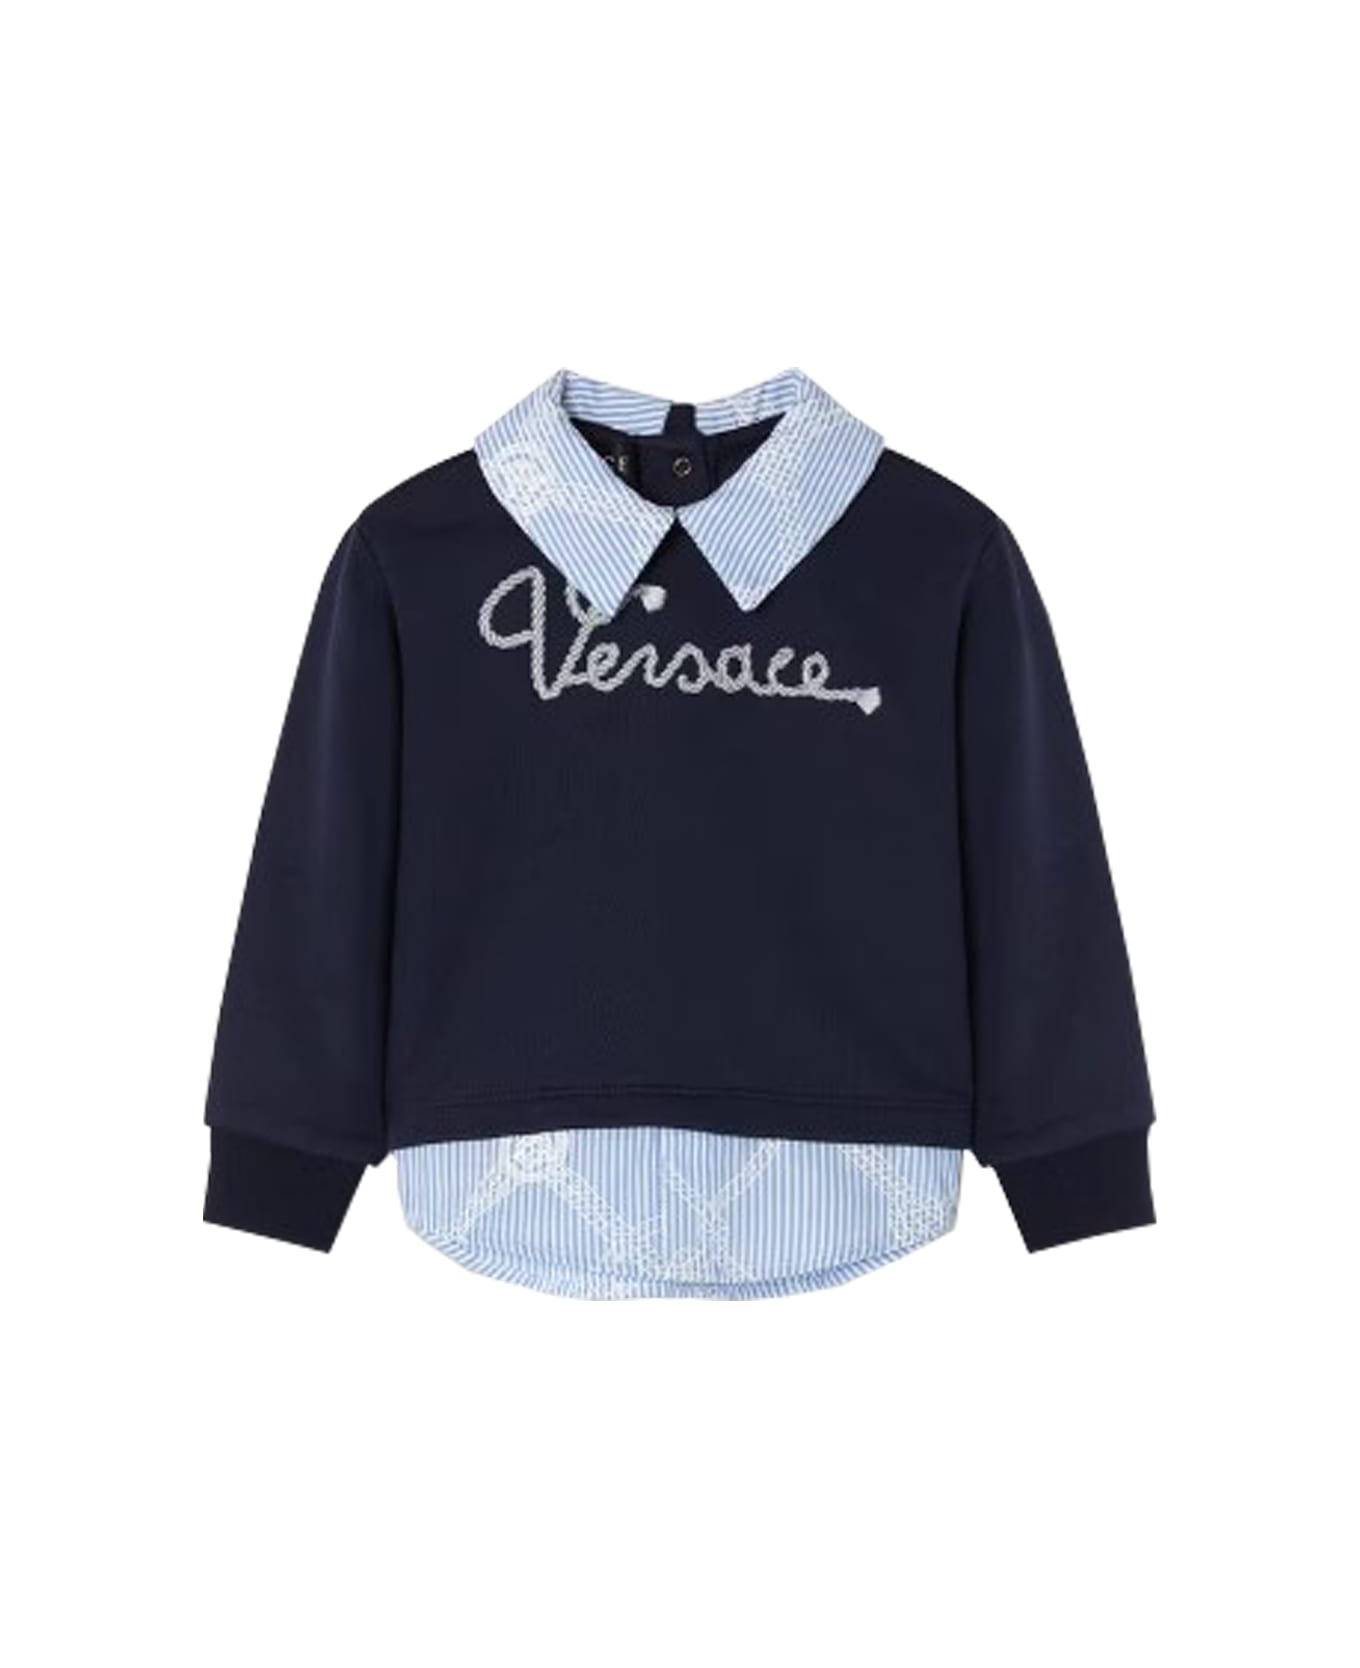 Versace Sweatshirt - Blue